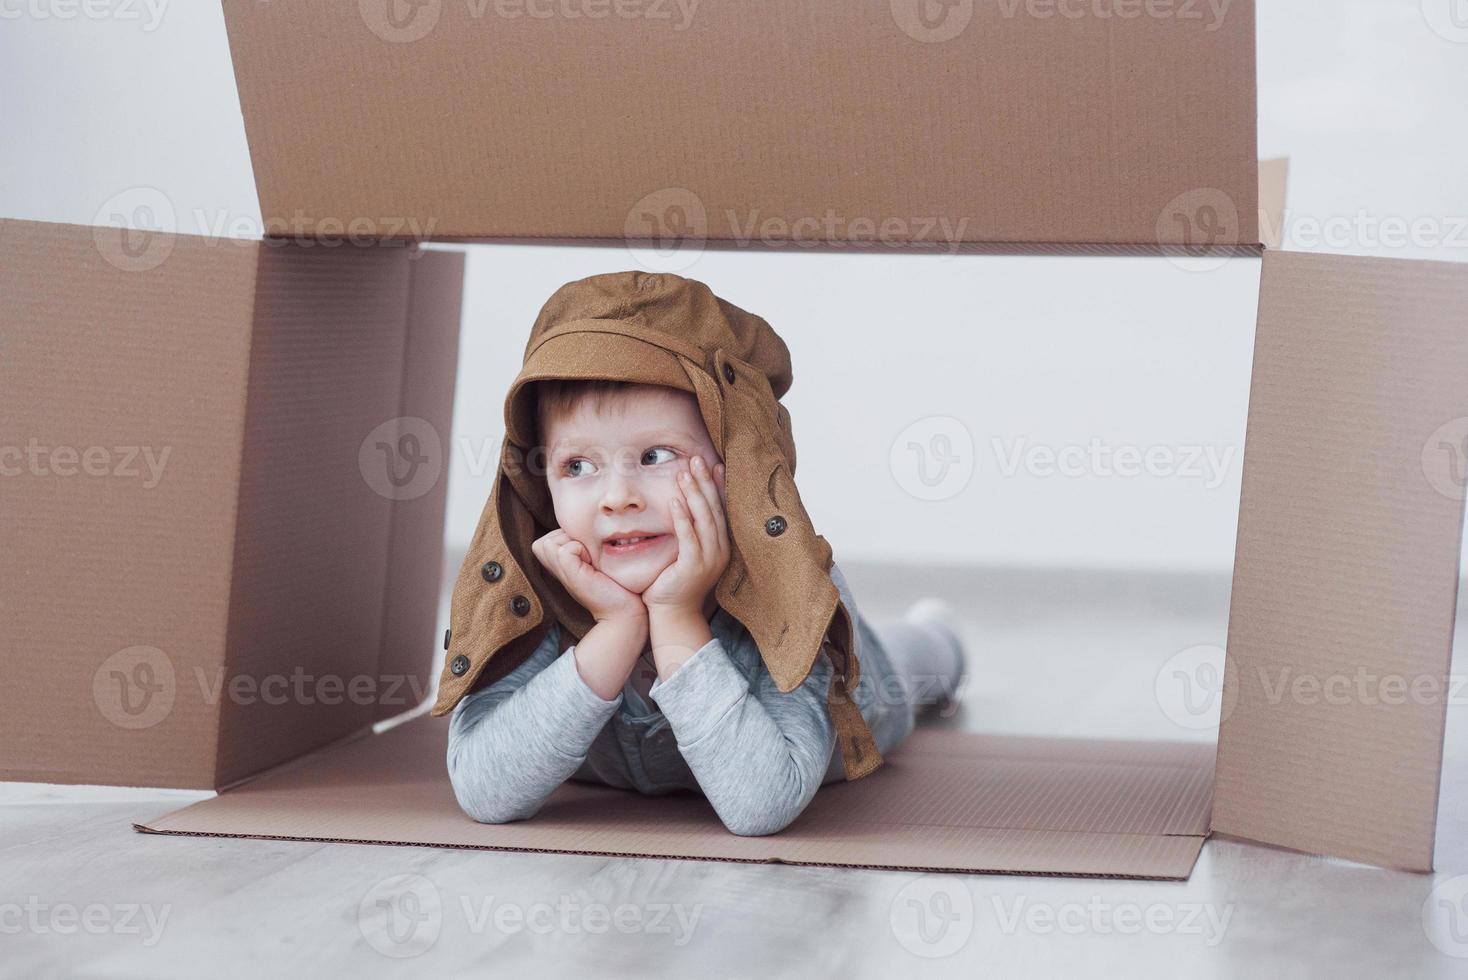 niño niño en edad preescolar jugando dentro de la caja de papel. infancia, reparaciones y nuevo concepto de casa. foto